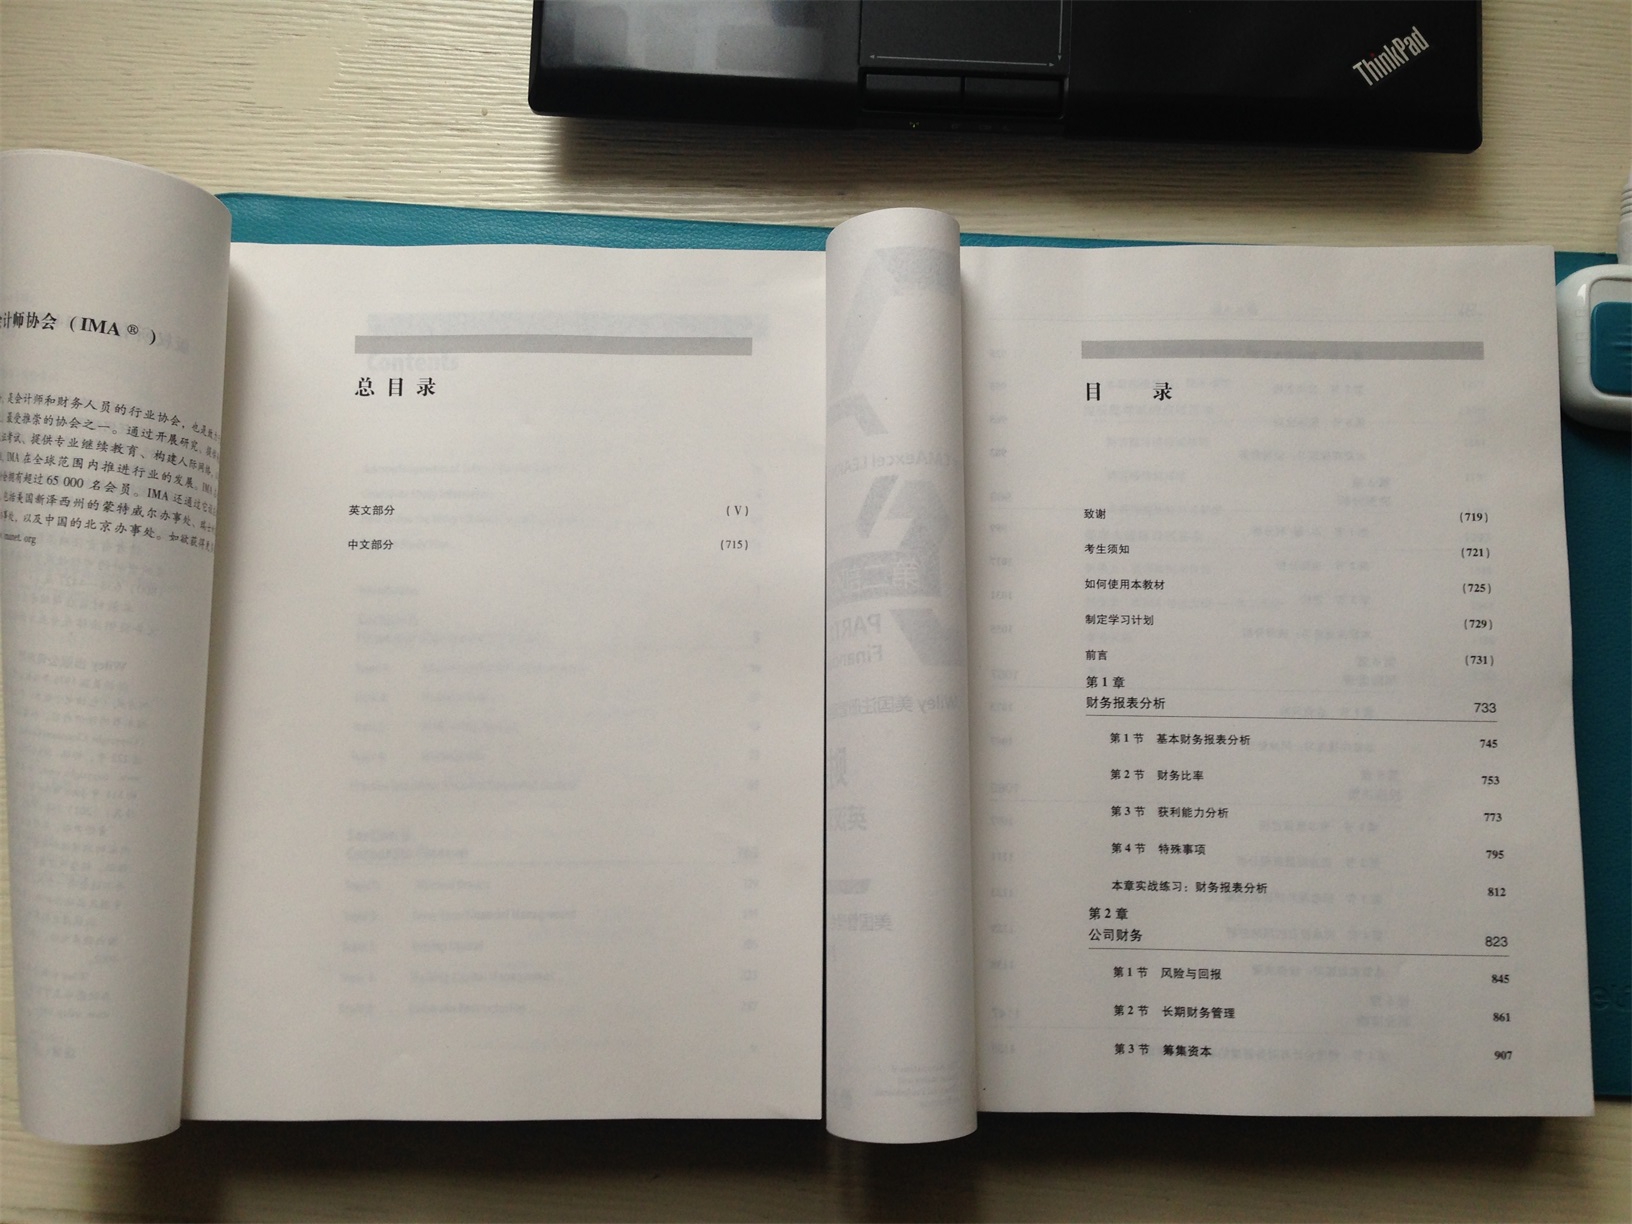 质量不错。正版书。每本都有600多页，很厚的哦。内页印刷清晰，字体漂亮。上册是英文，下册是中文。